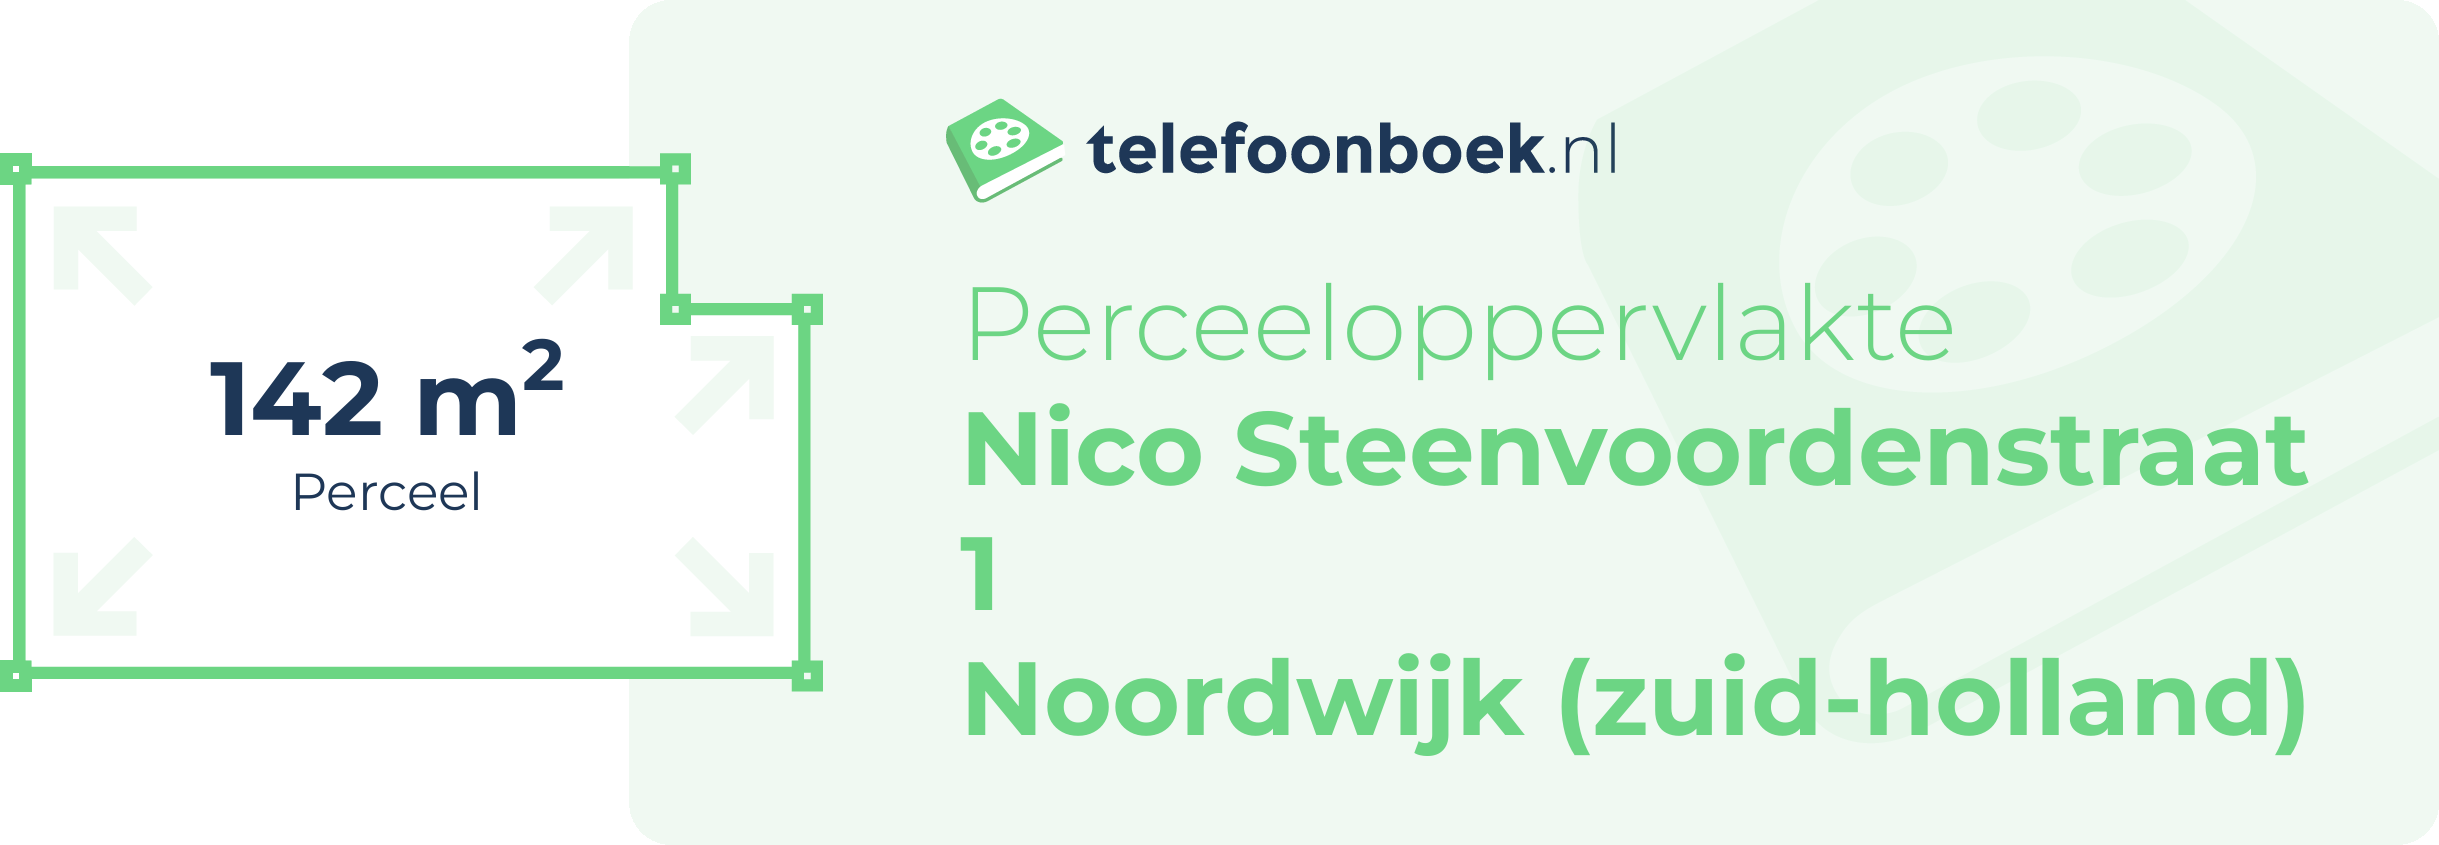 Perceeloppervlakte Nico Steenvoordenstraat 1 Noordwijk (Zuid-Holland)